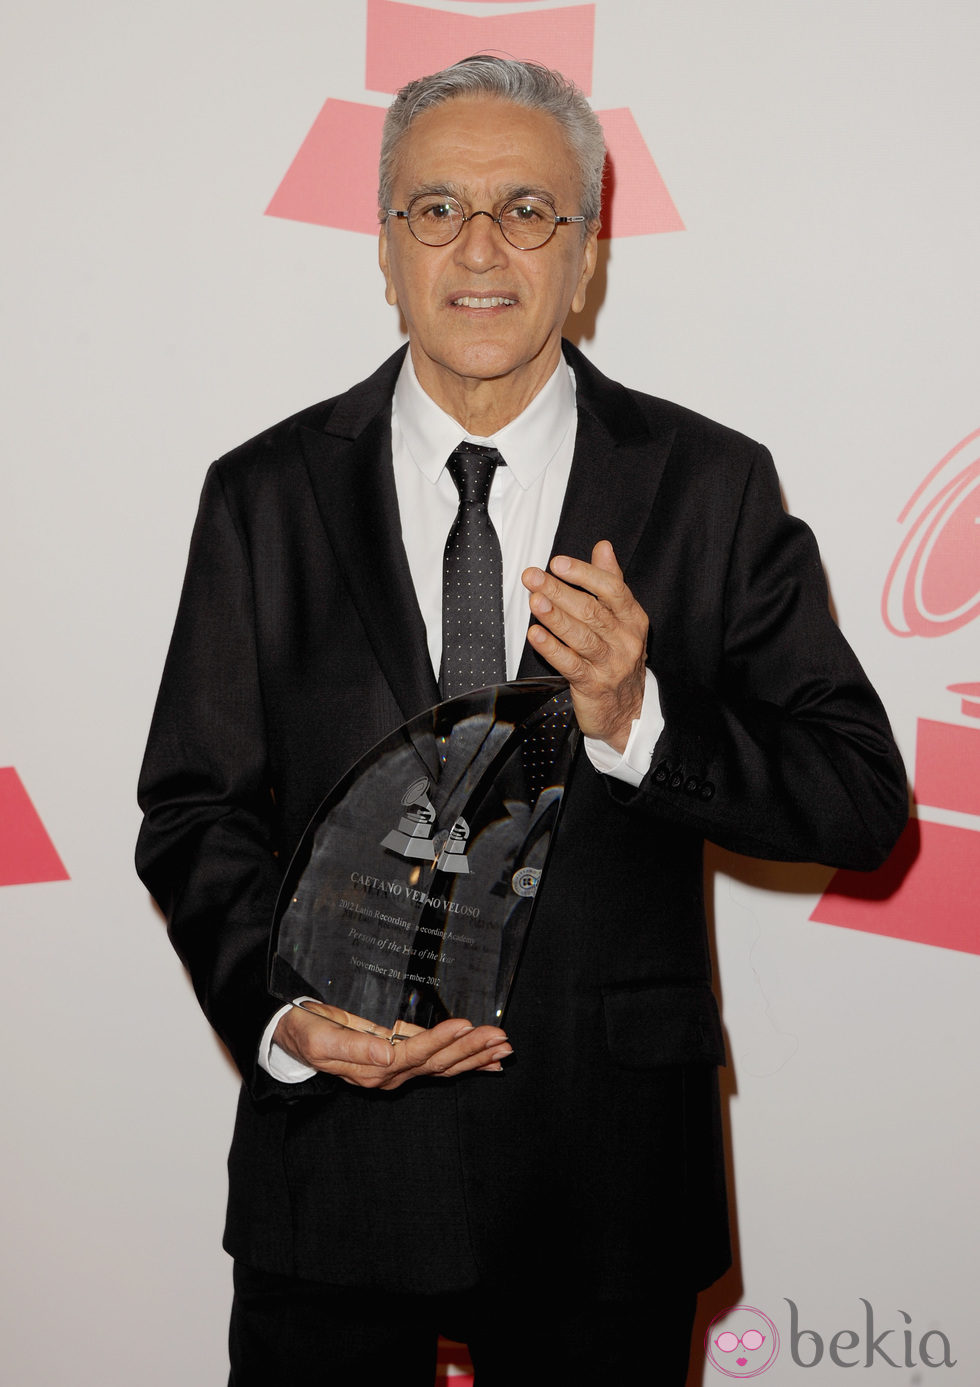 Caetano Veloso con su galardón a Persona del Año 2012